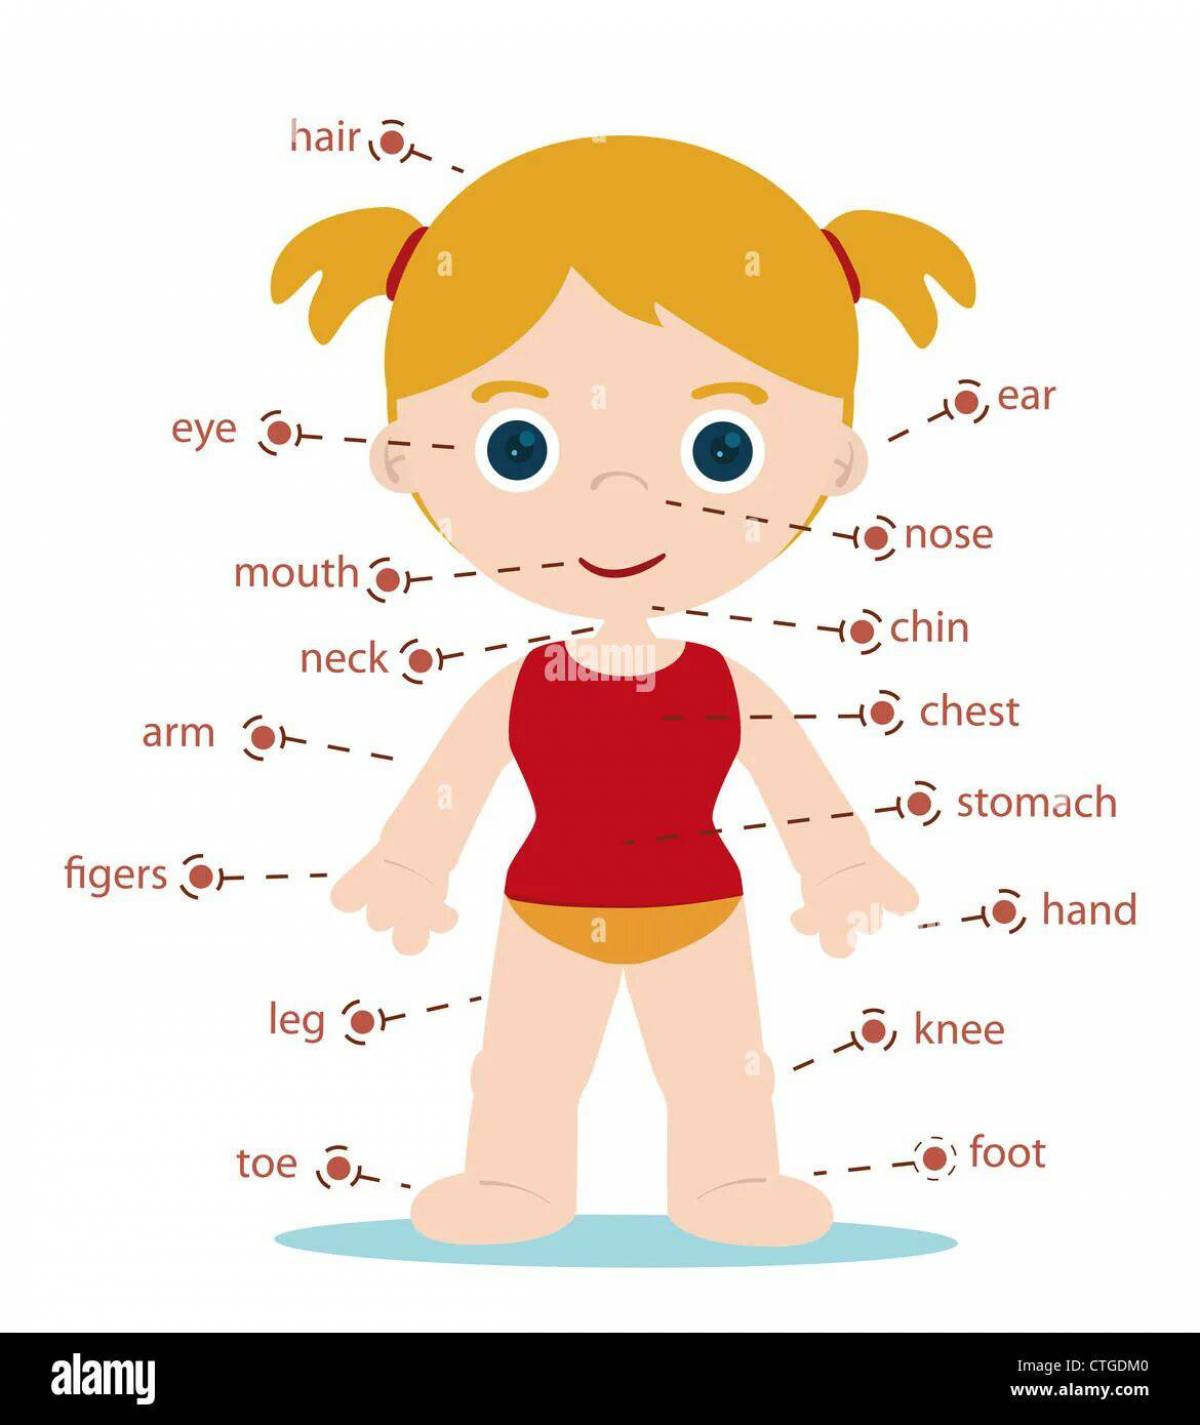 Части тела на английском для детей #11